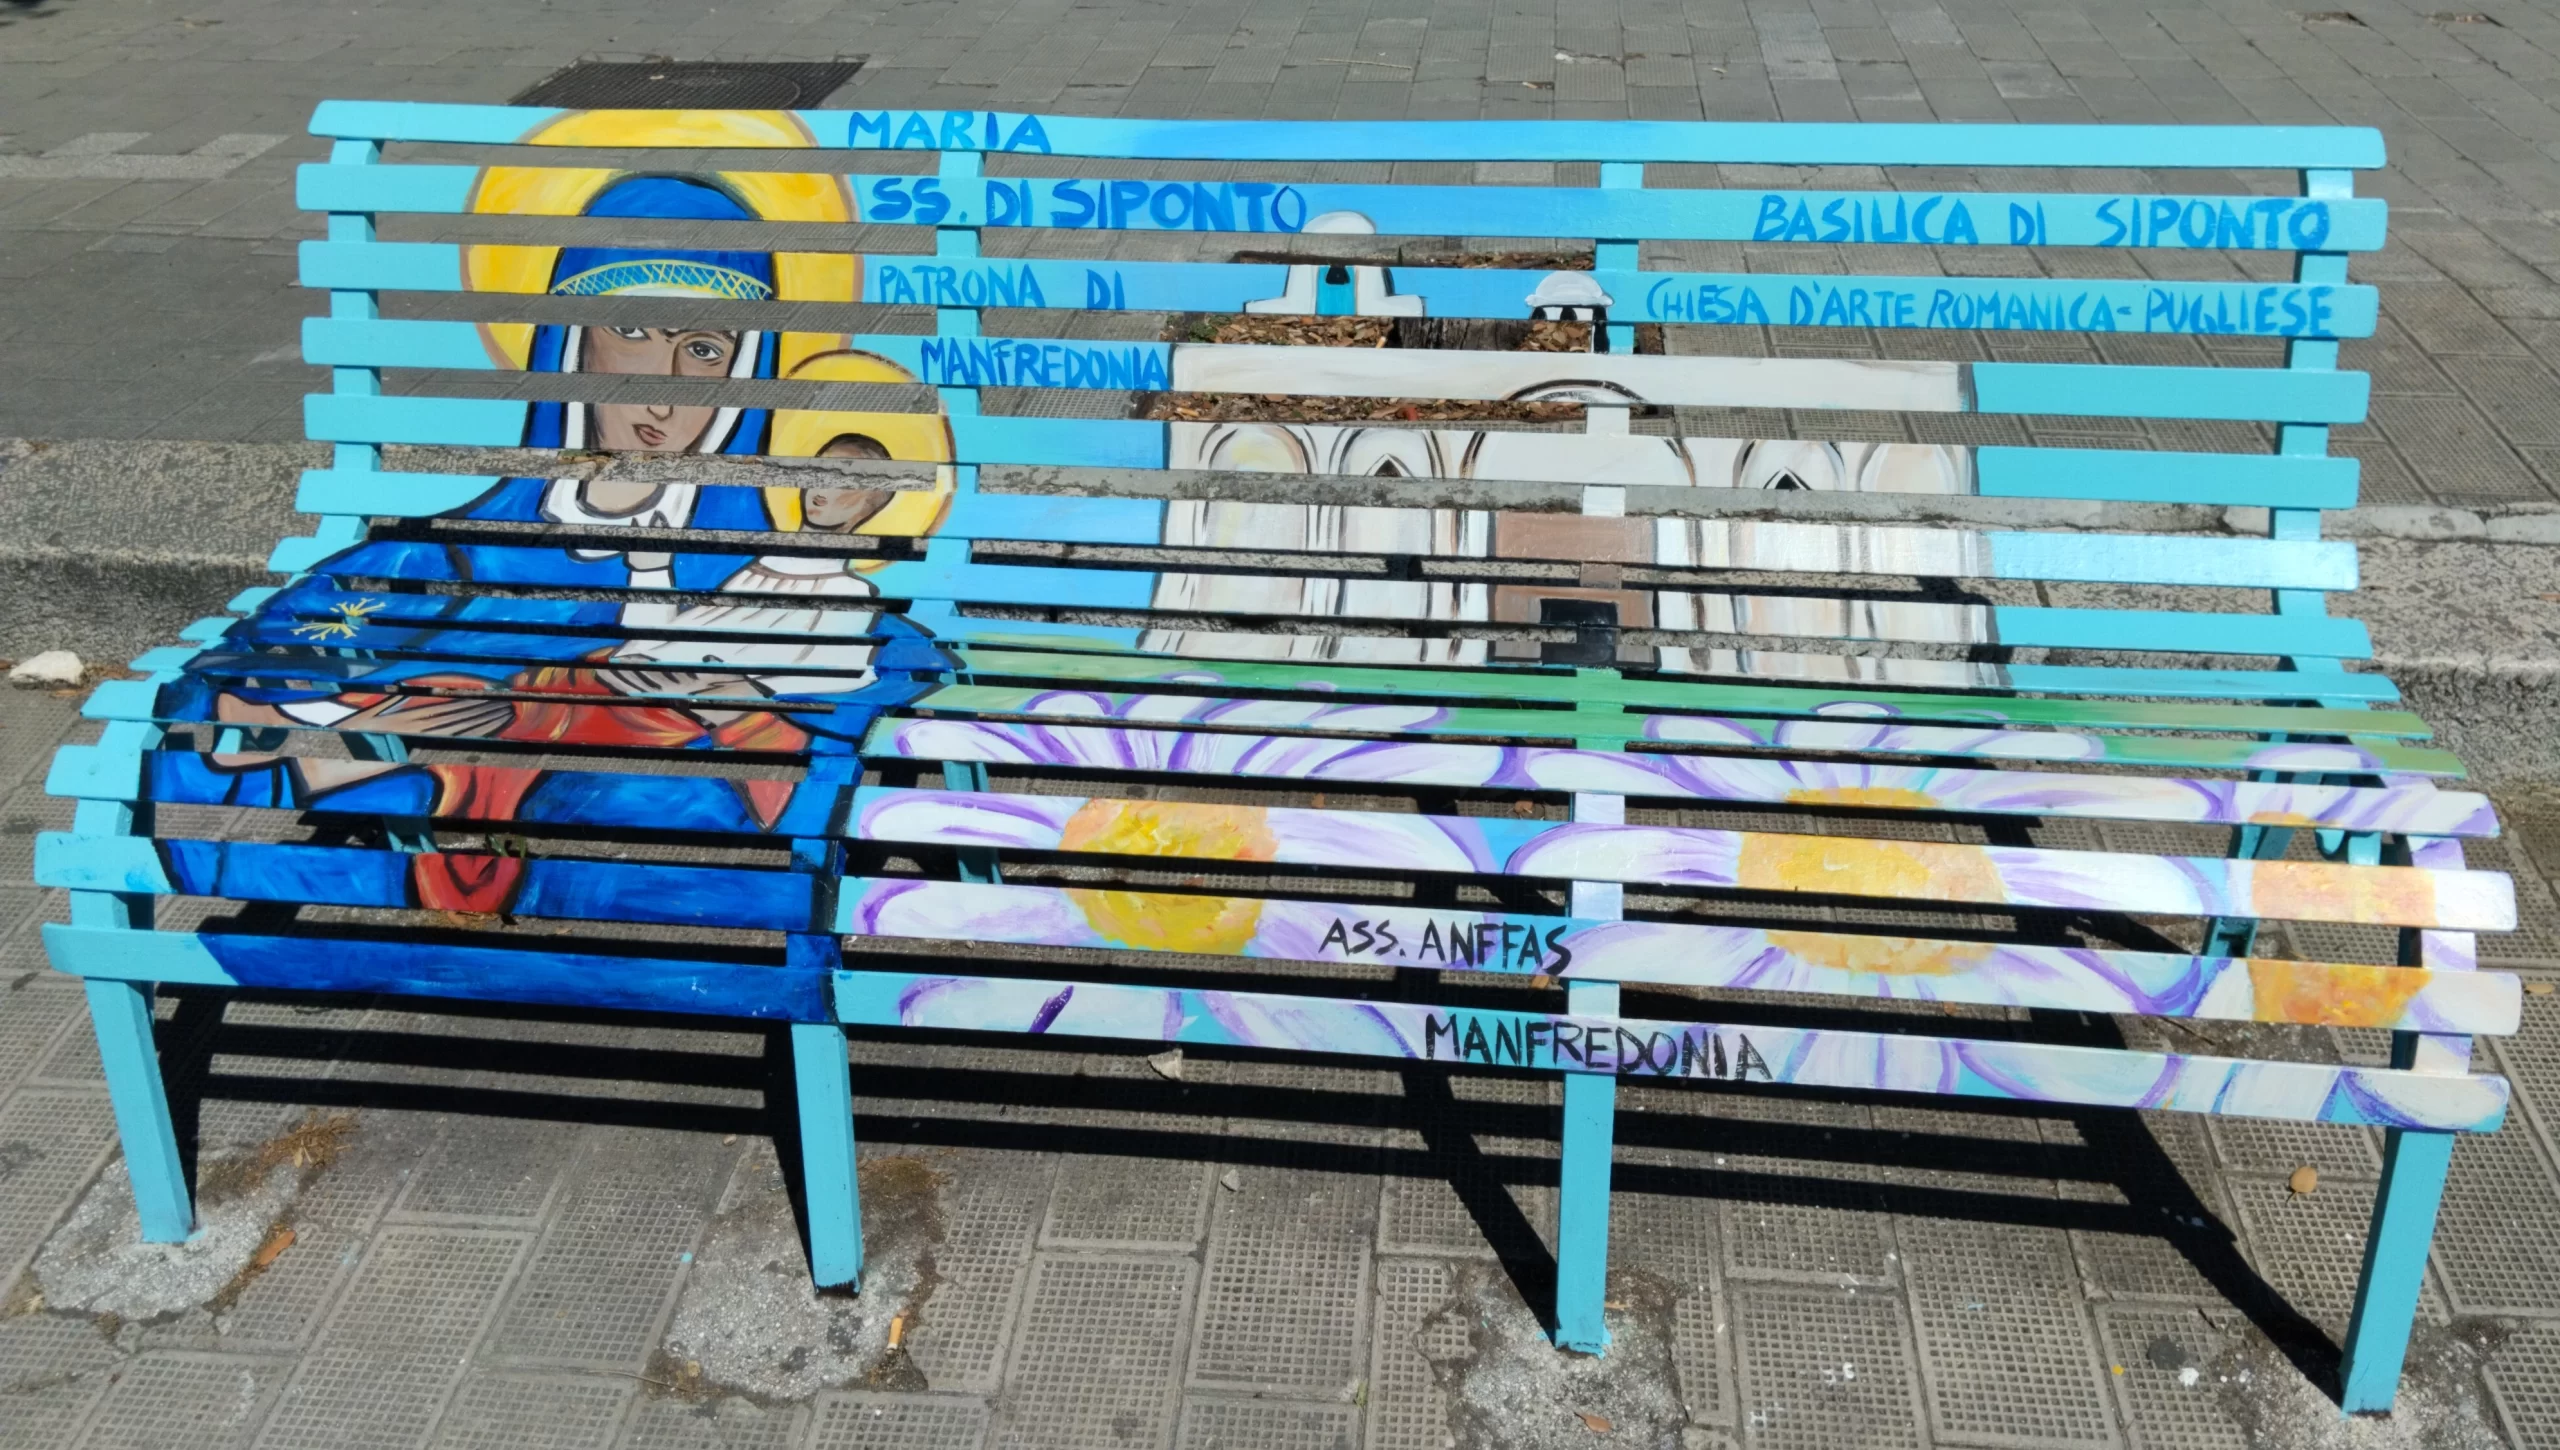 Progetto ANFFAS -una panchina da amare-Dipinto Madonna di Siponto